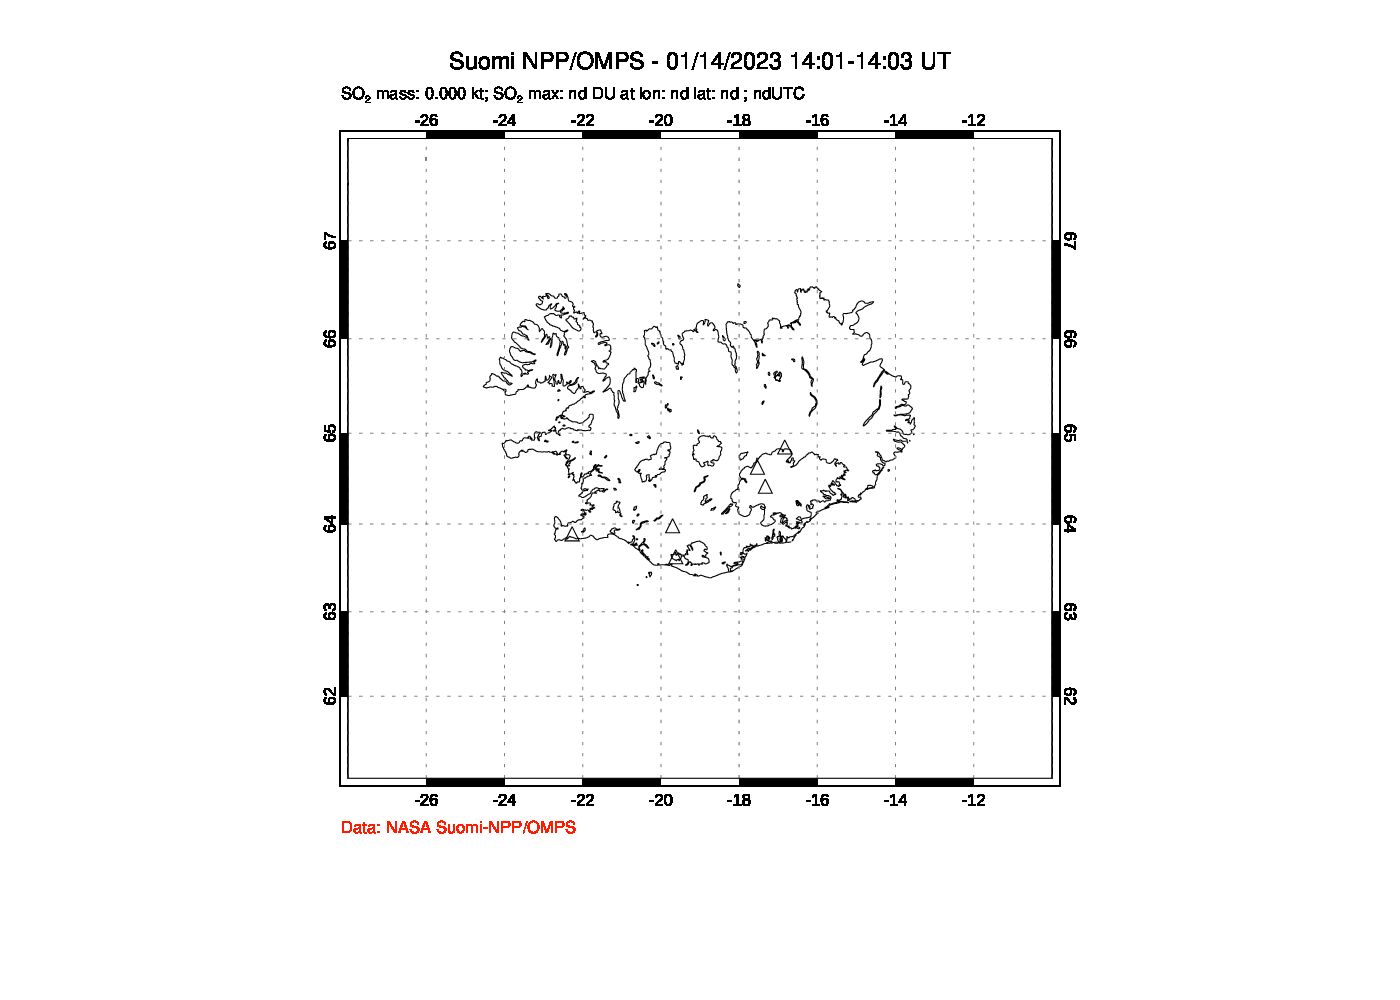 A sulfur dioxide image over Iceland on Jan 14, 2023.